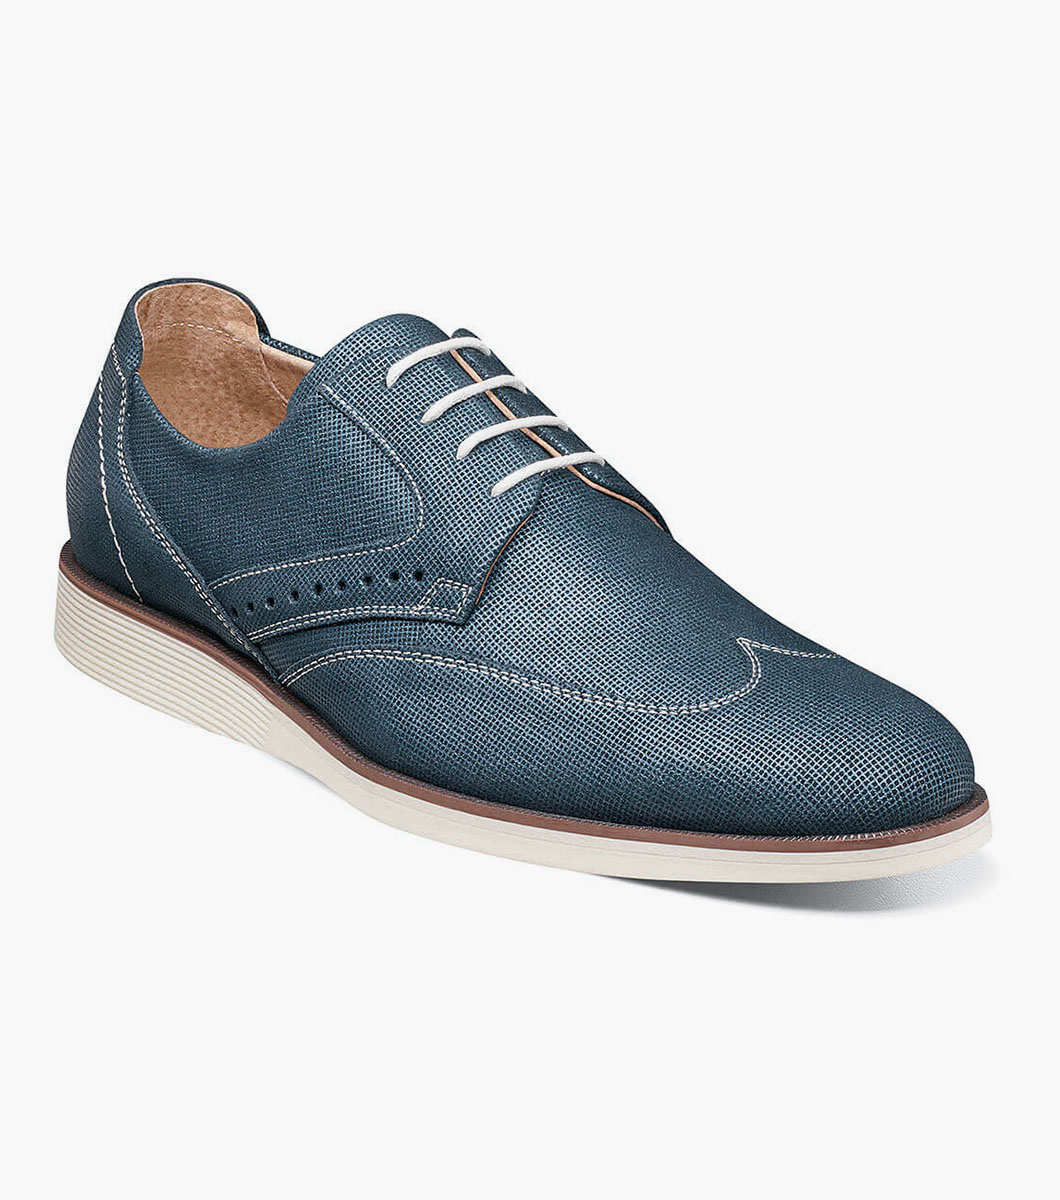 Luxley Wingtip Oxford Mens Casual Shoes Stacyadams